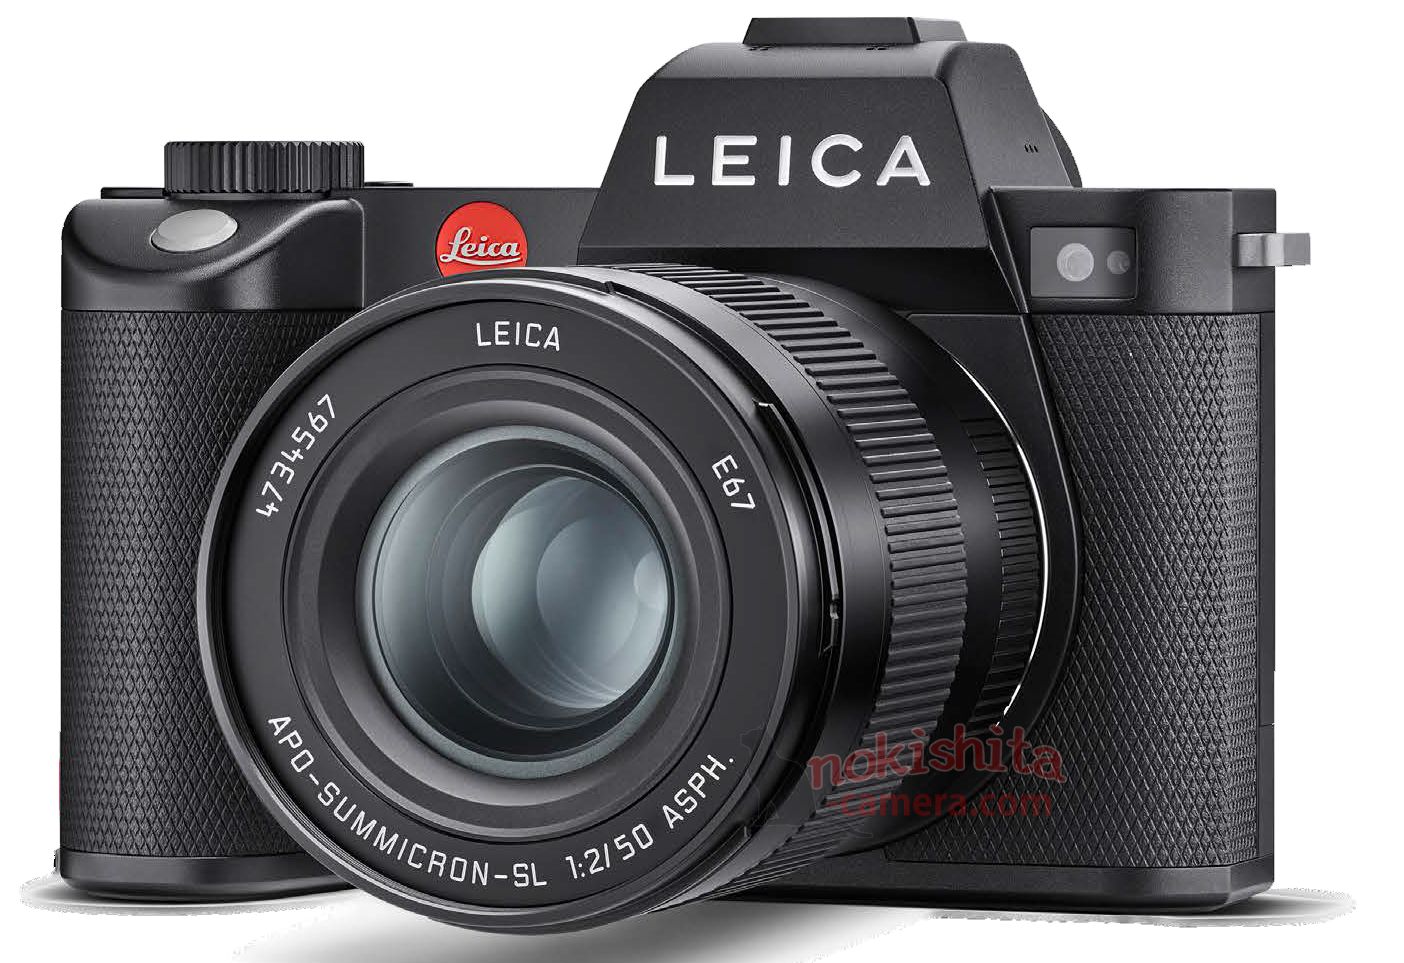 Leica'nın yeni aynasız fotoğraf makinesi 6 Kasım'da tanıtılacak